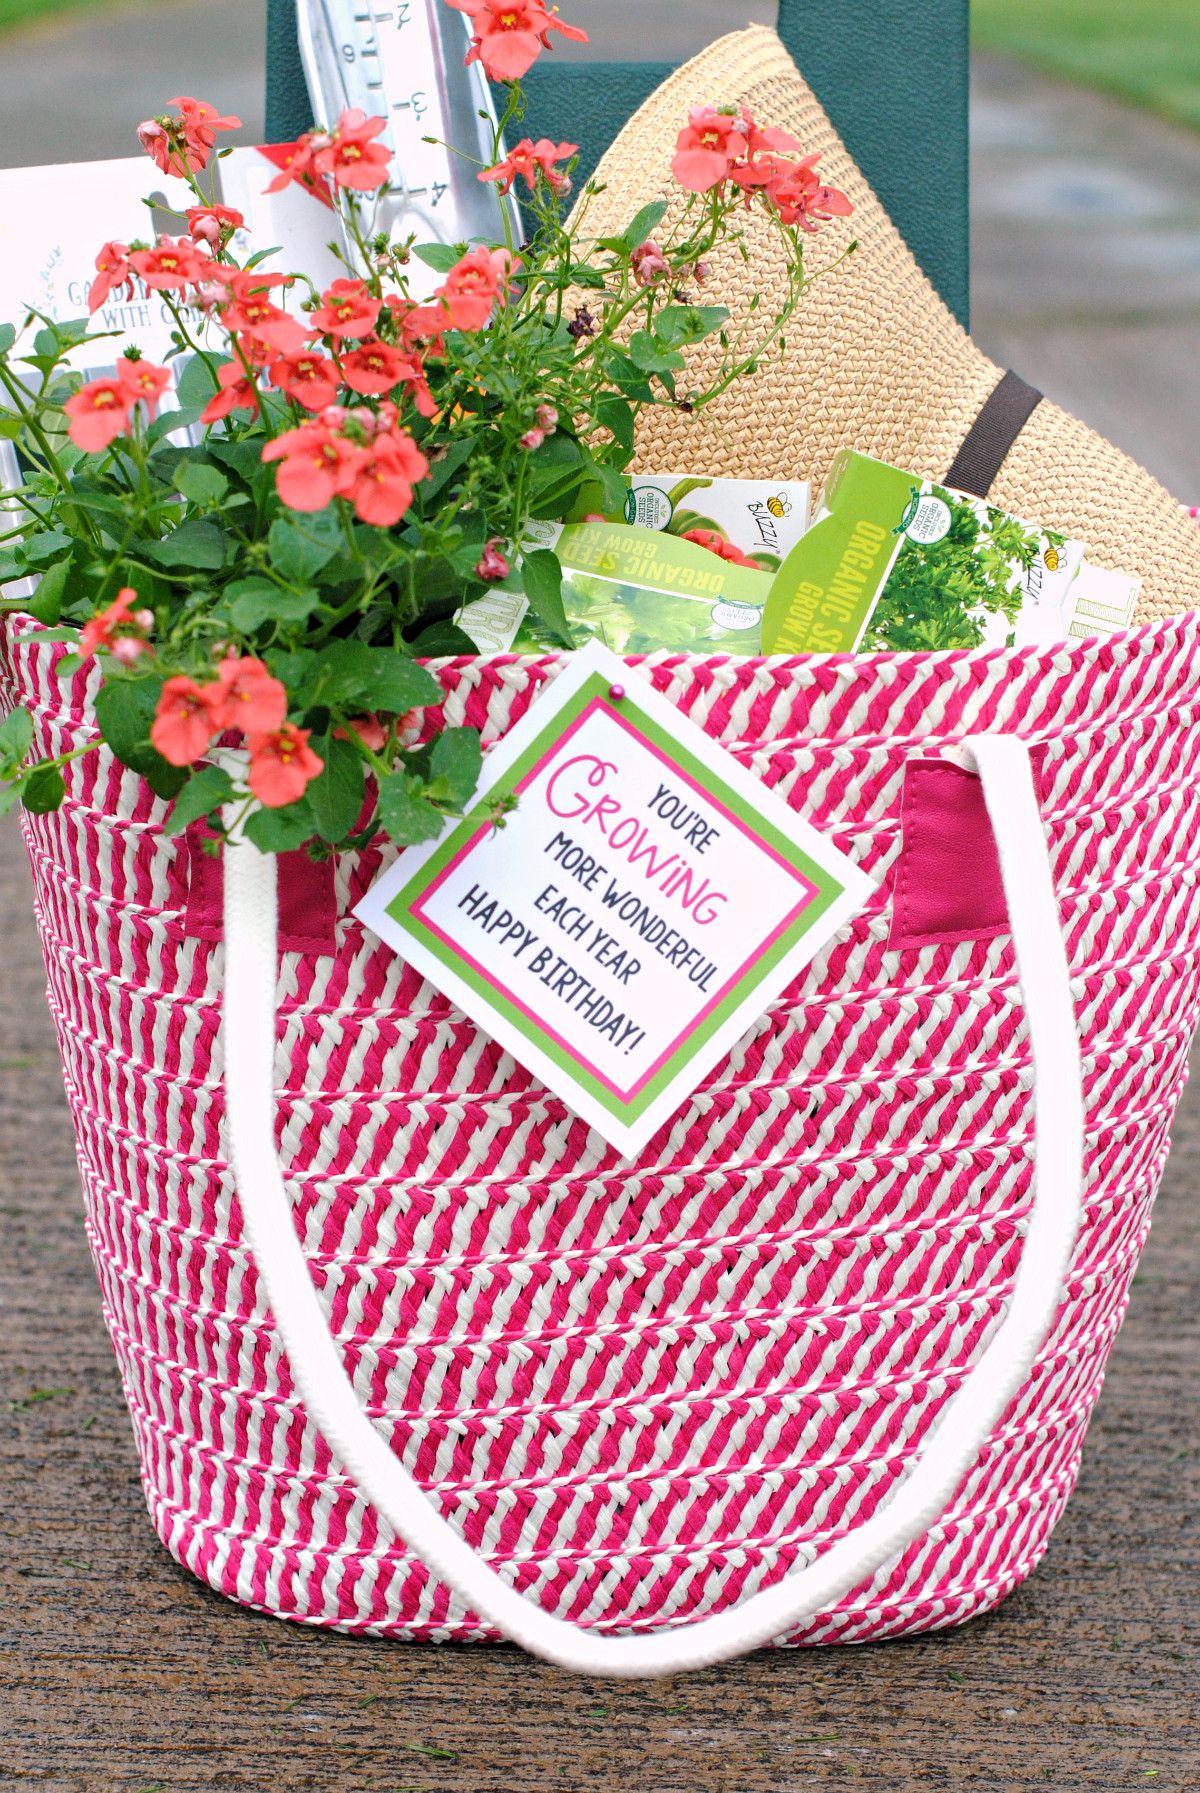 Gardening Gift Basket Ideas
 Fun Gardening Gift Basket Idea – Fun Squared